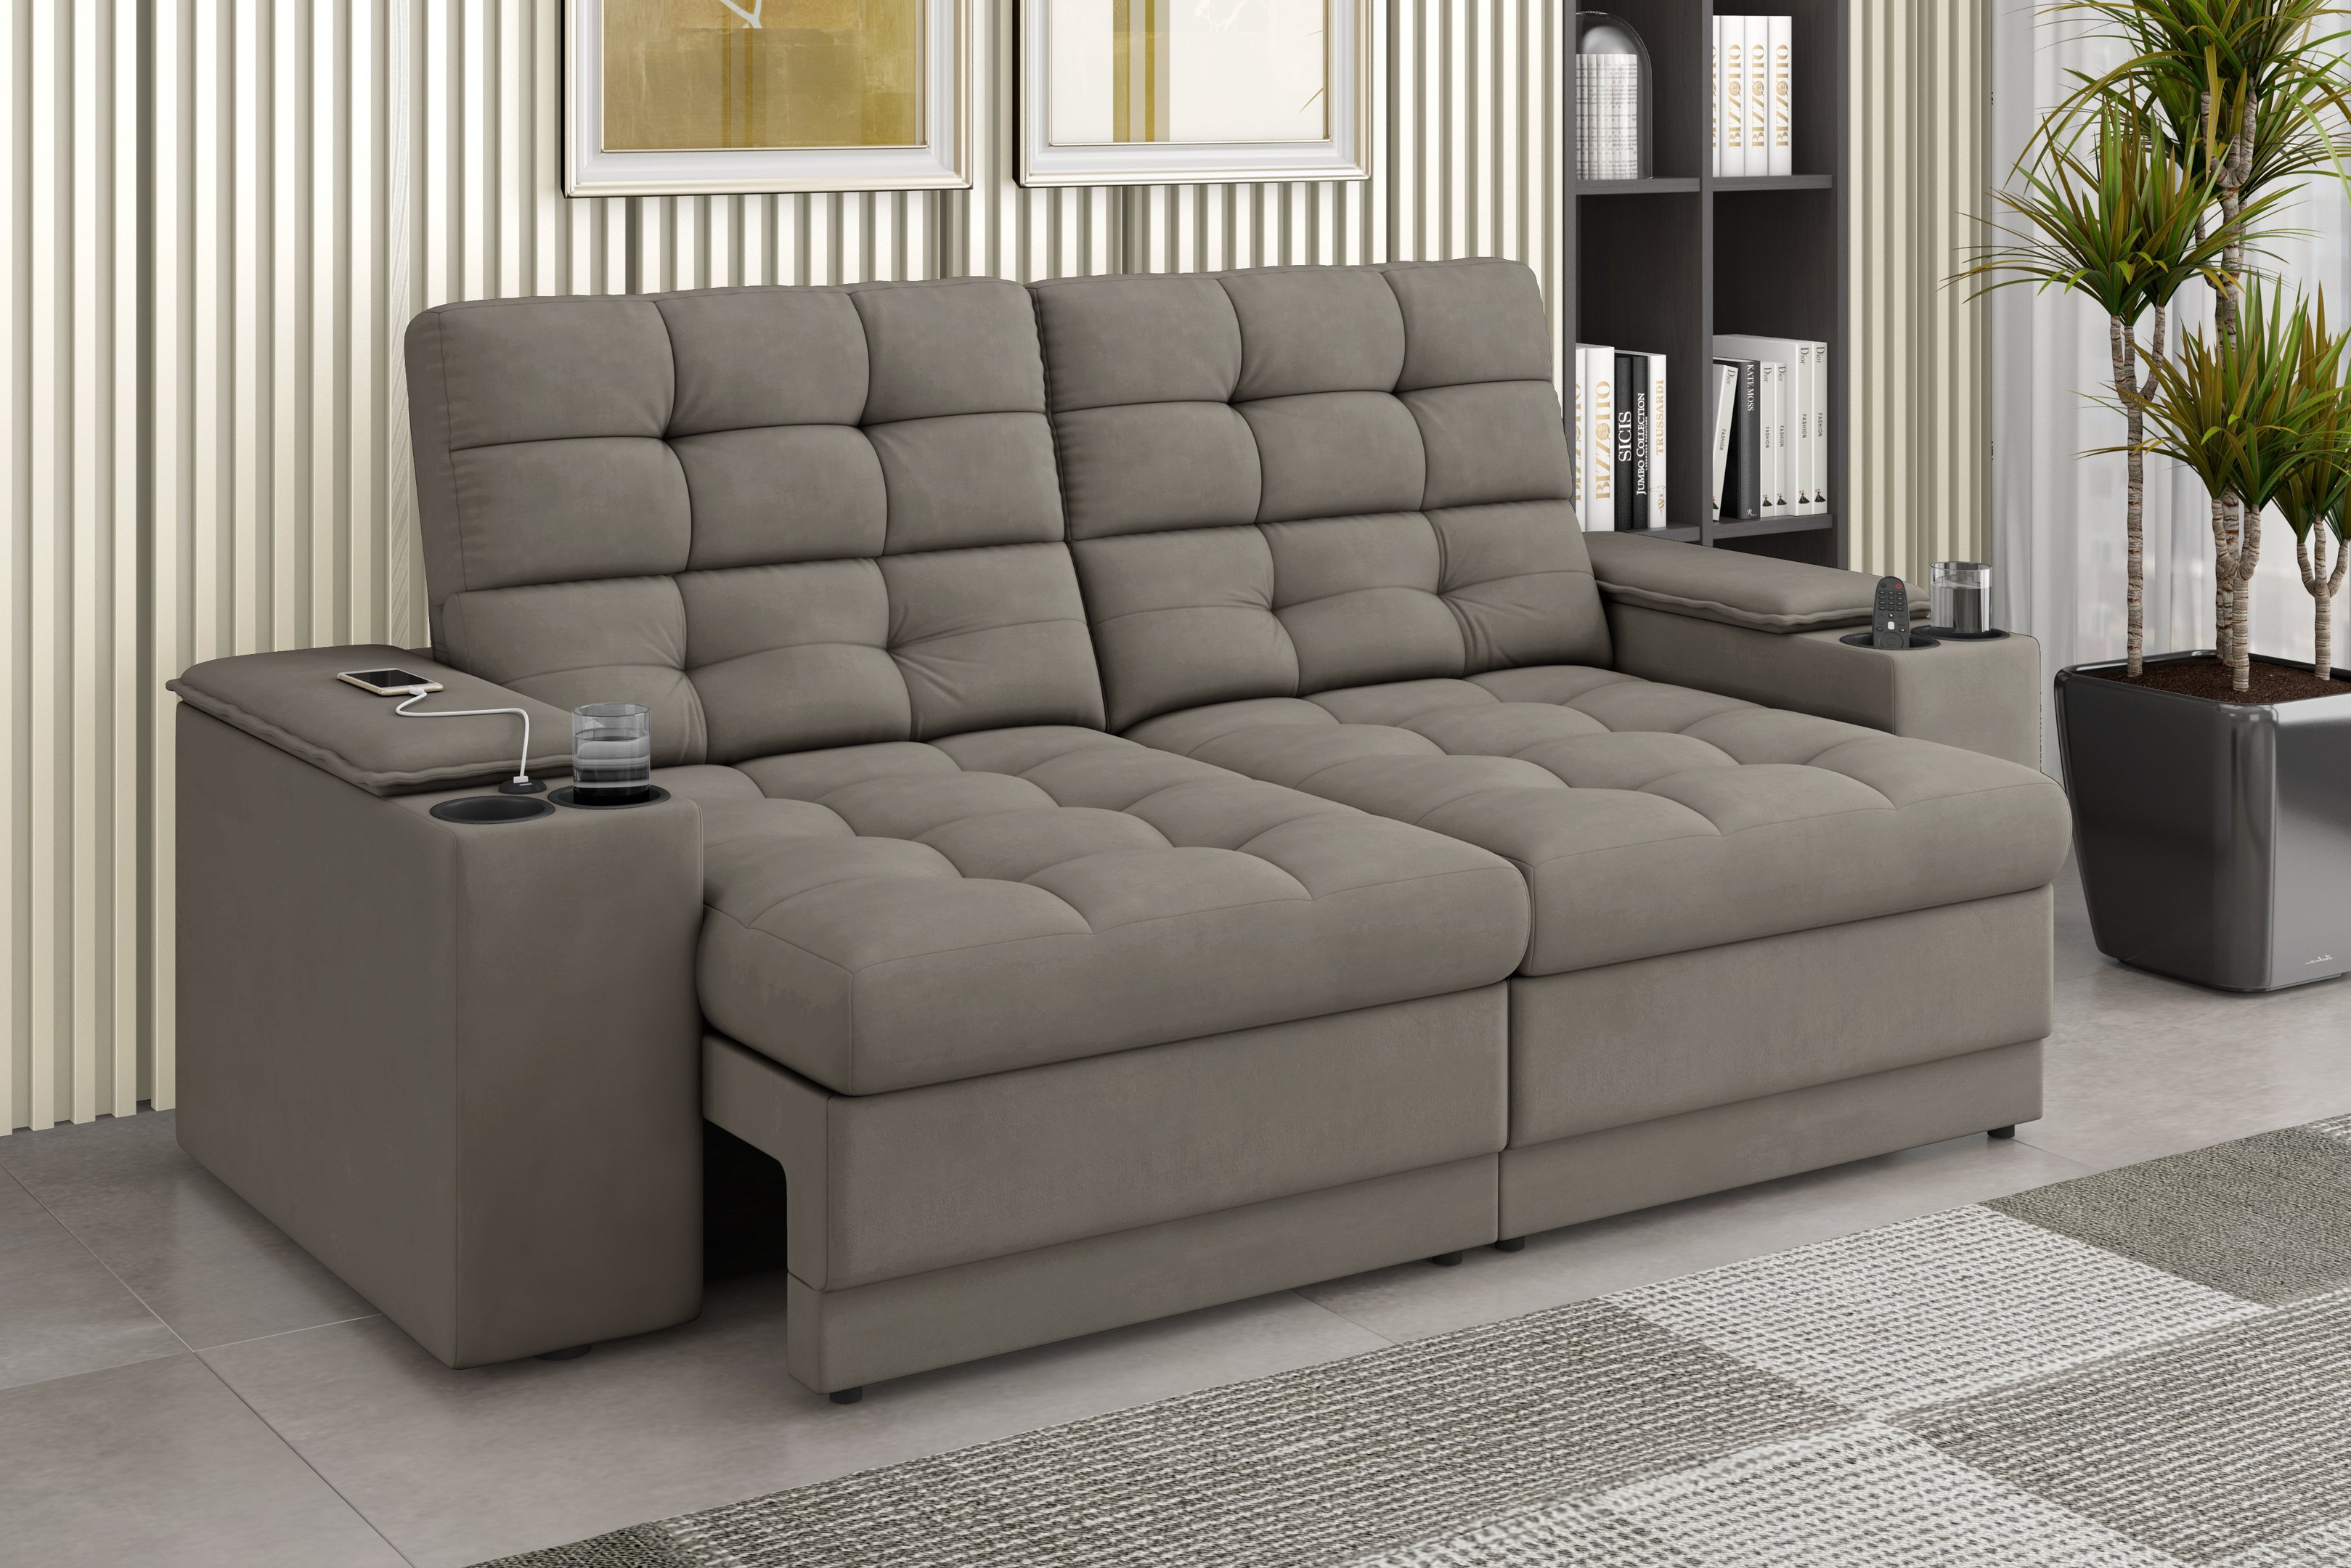 Sofá Confort Premium 1,70m Assento Retrátil/reclinável Porta Copos e Usb Suede Capuccino - Xflex